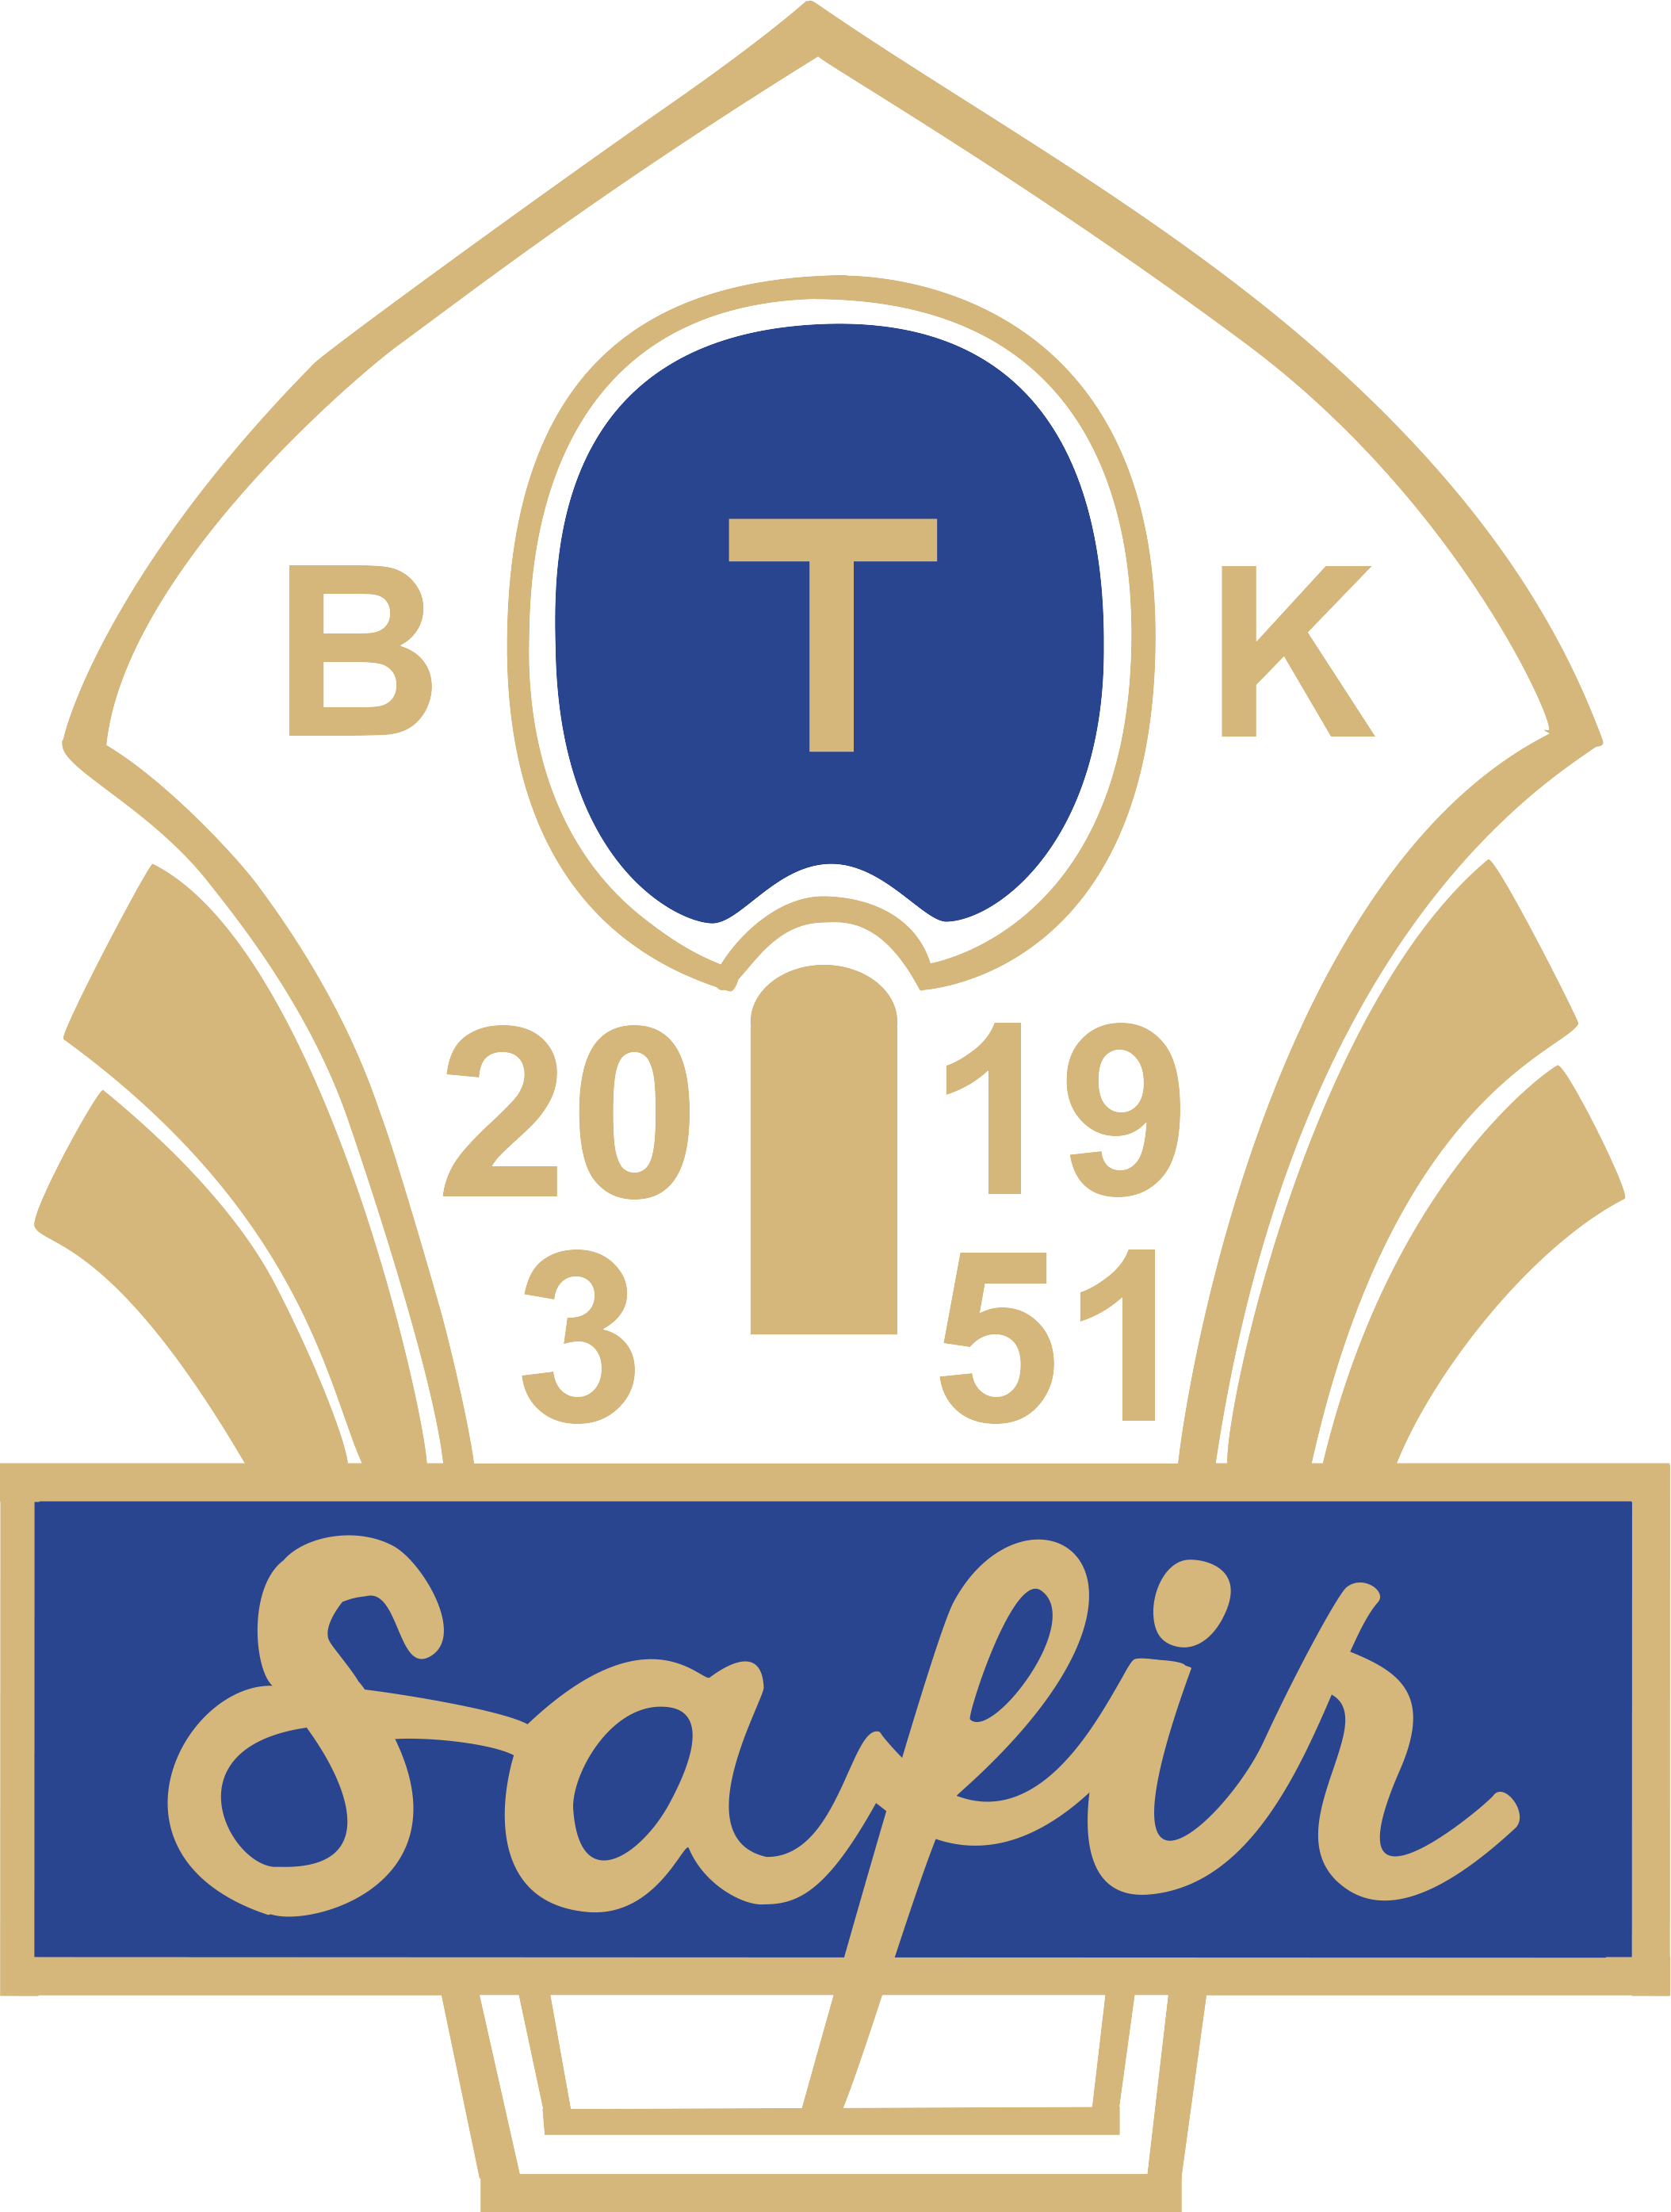 BTK Safir B1